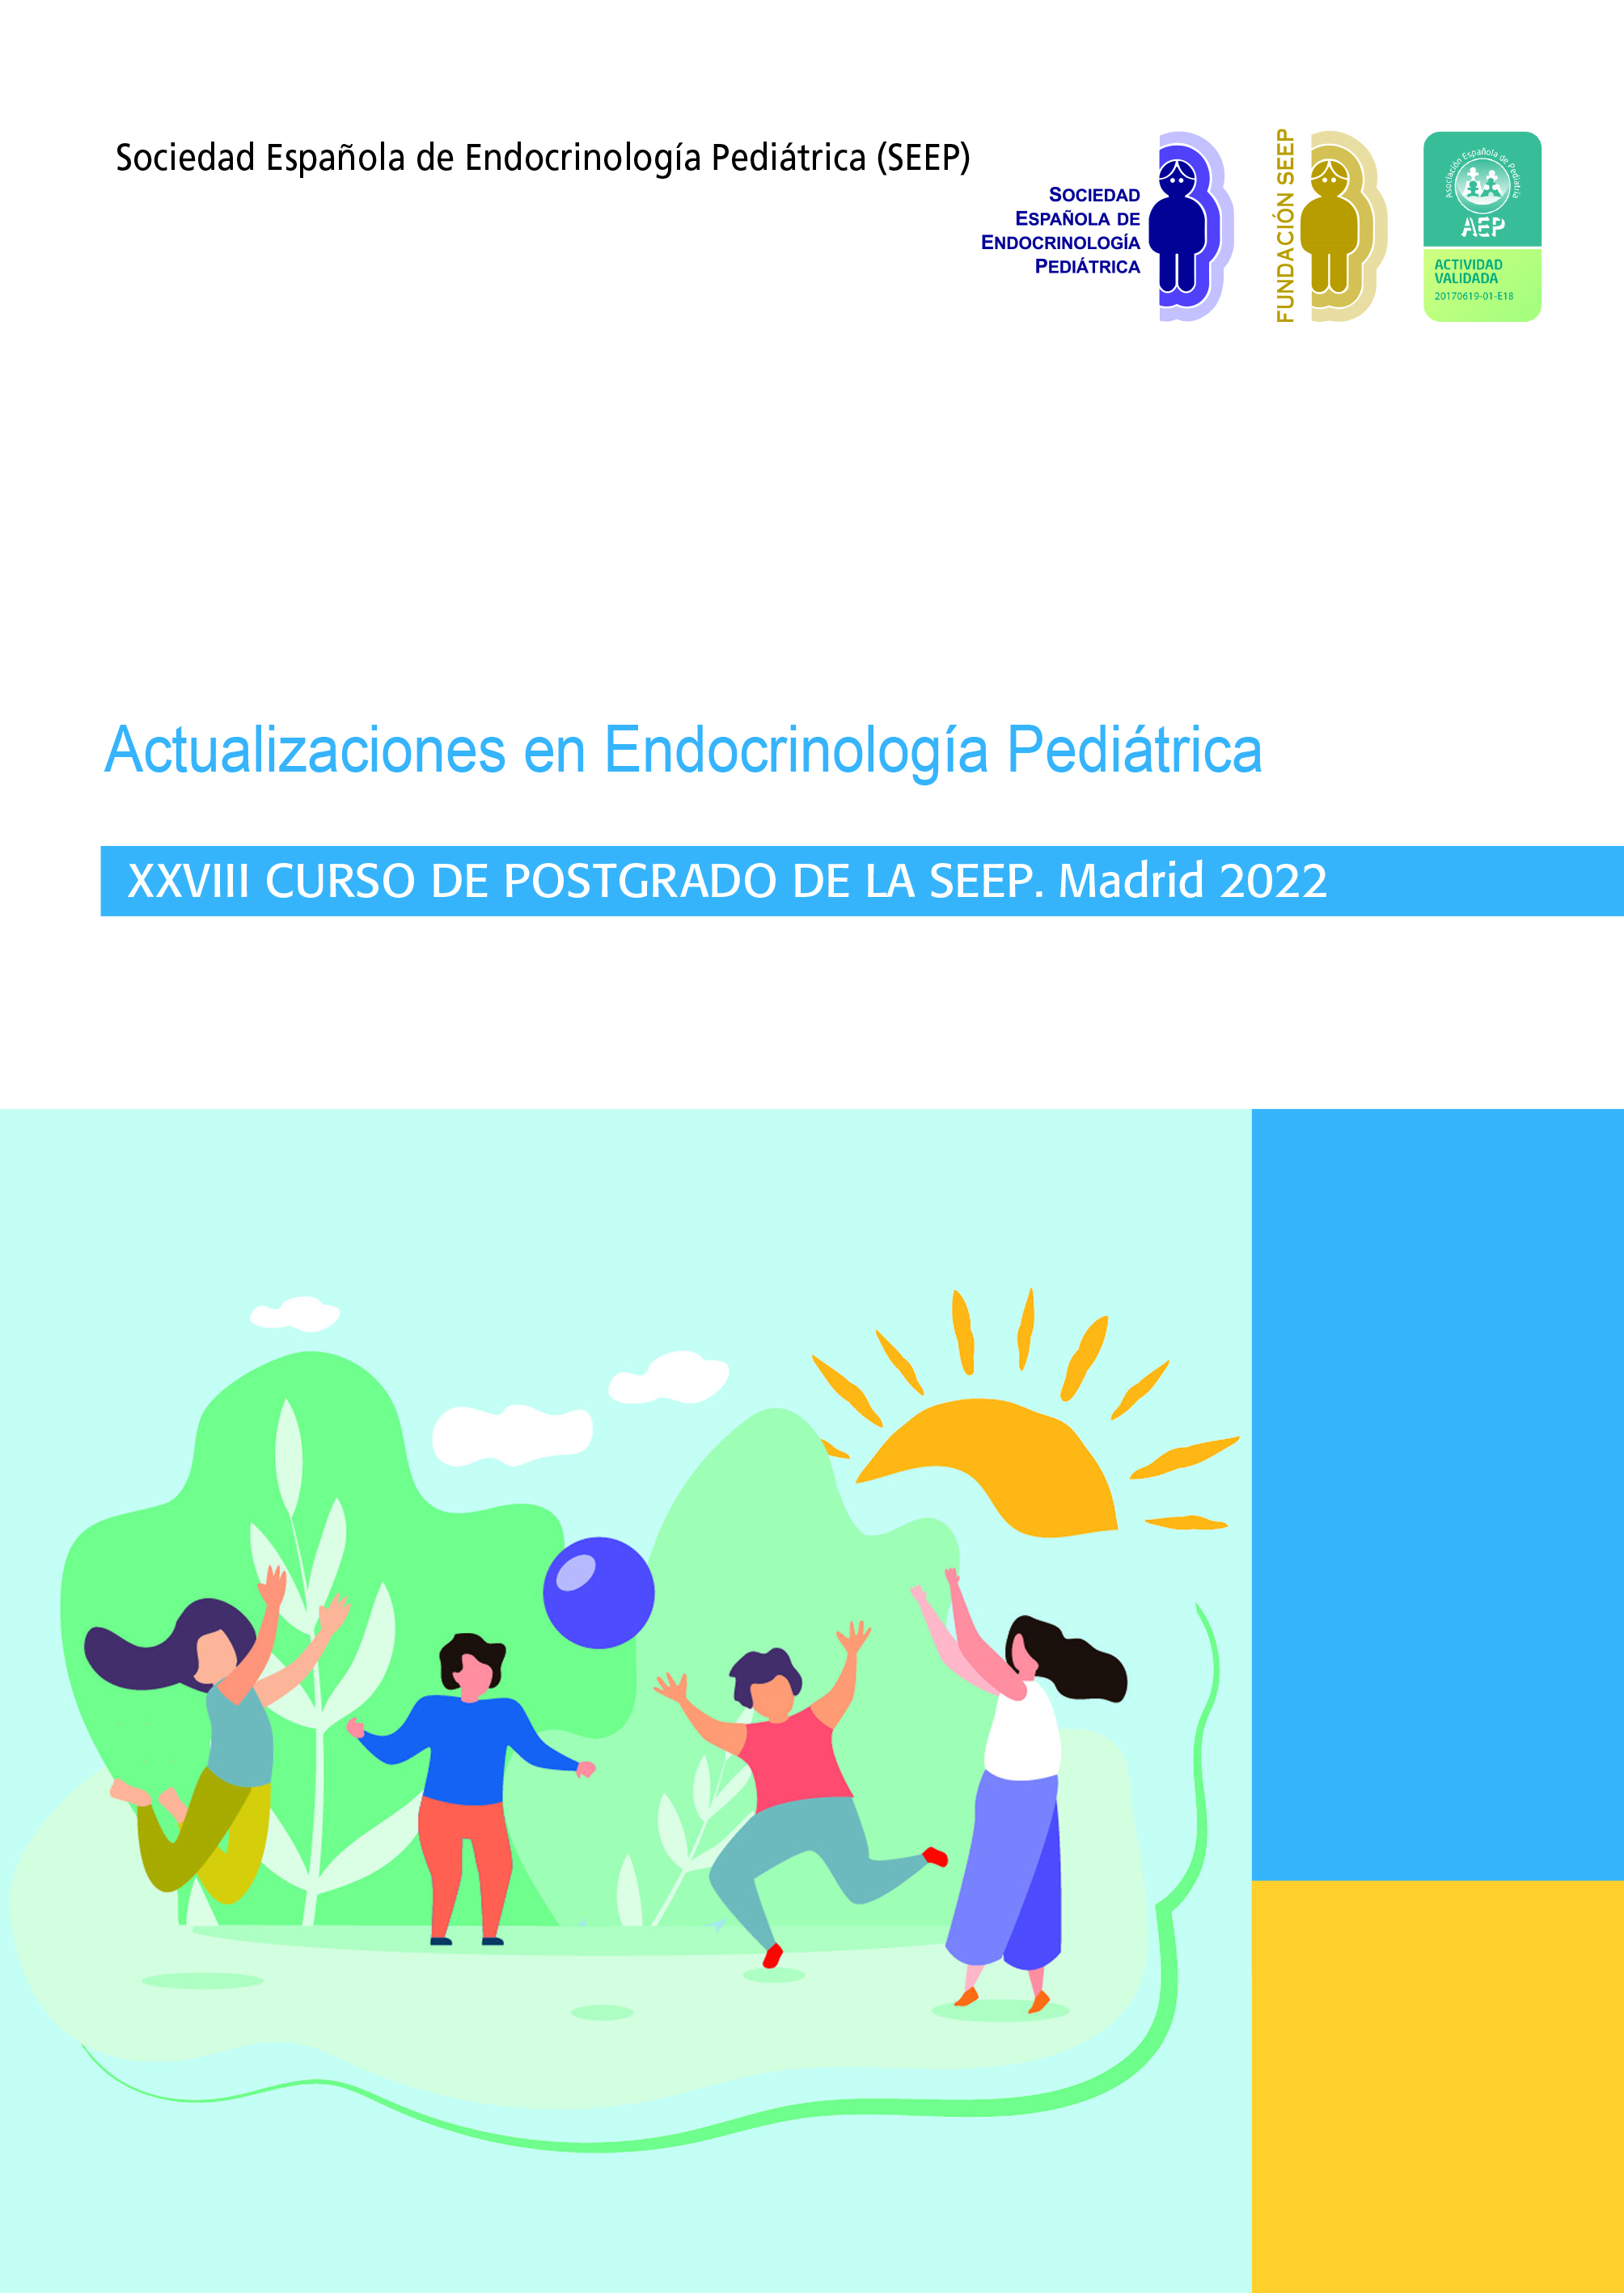 Actualizaciones en Endocrinología Pediátrica 2022